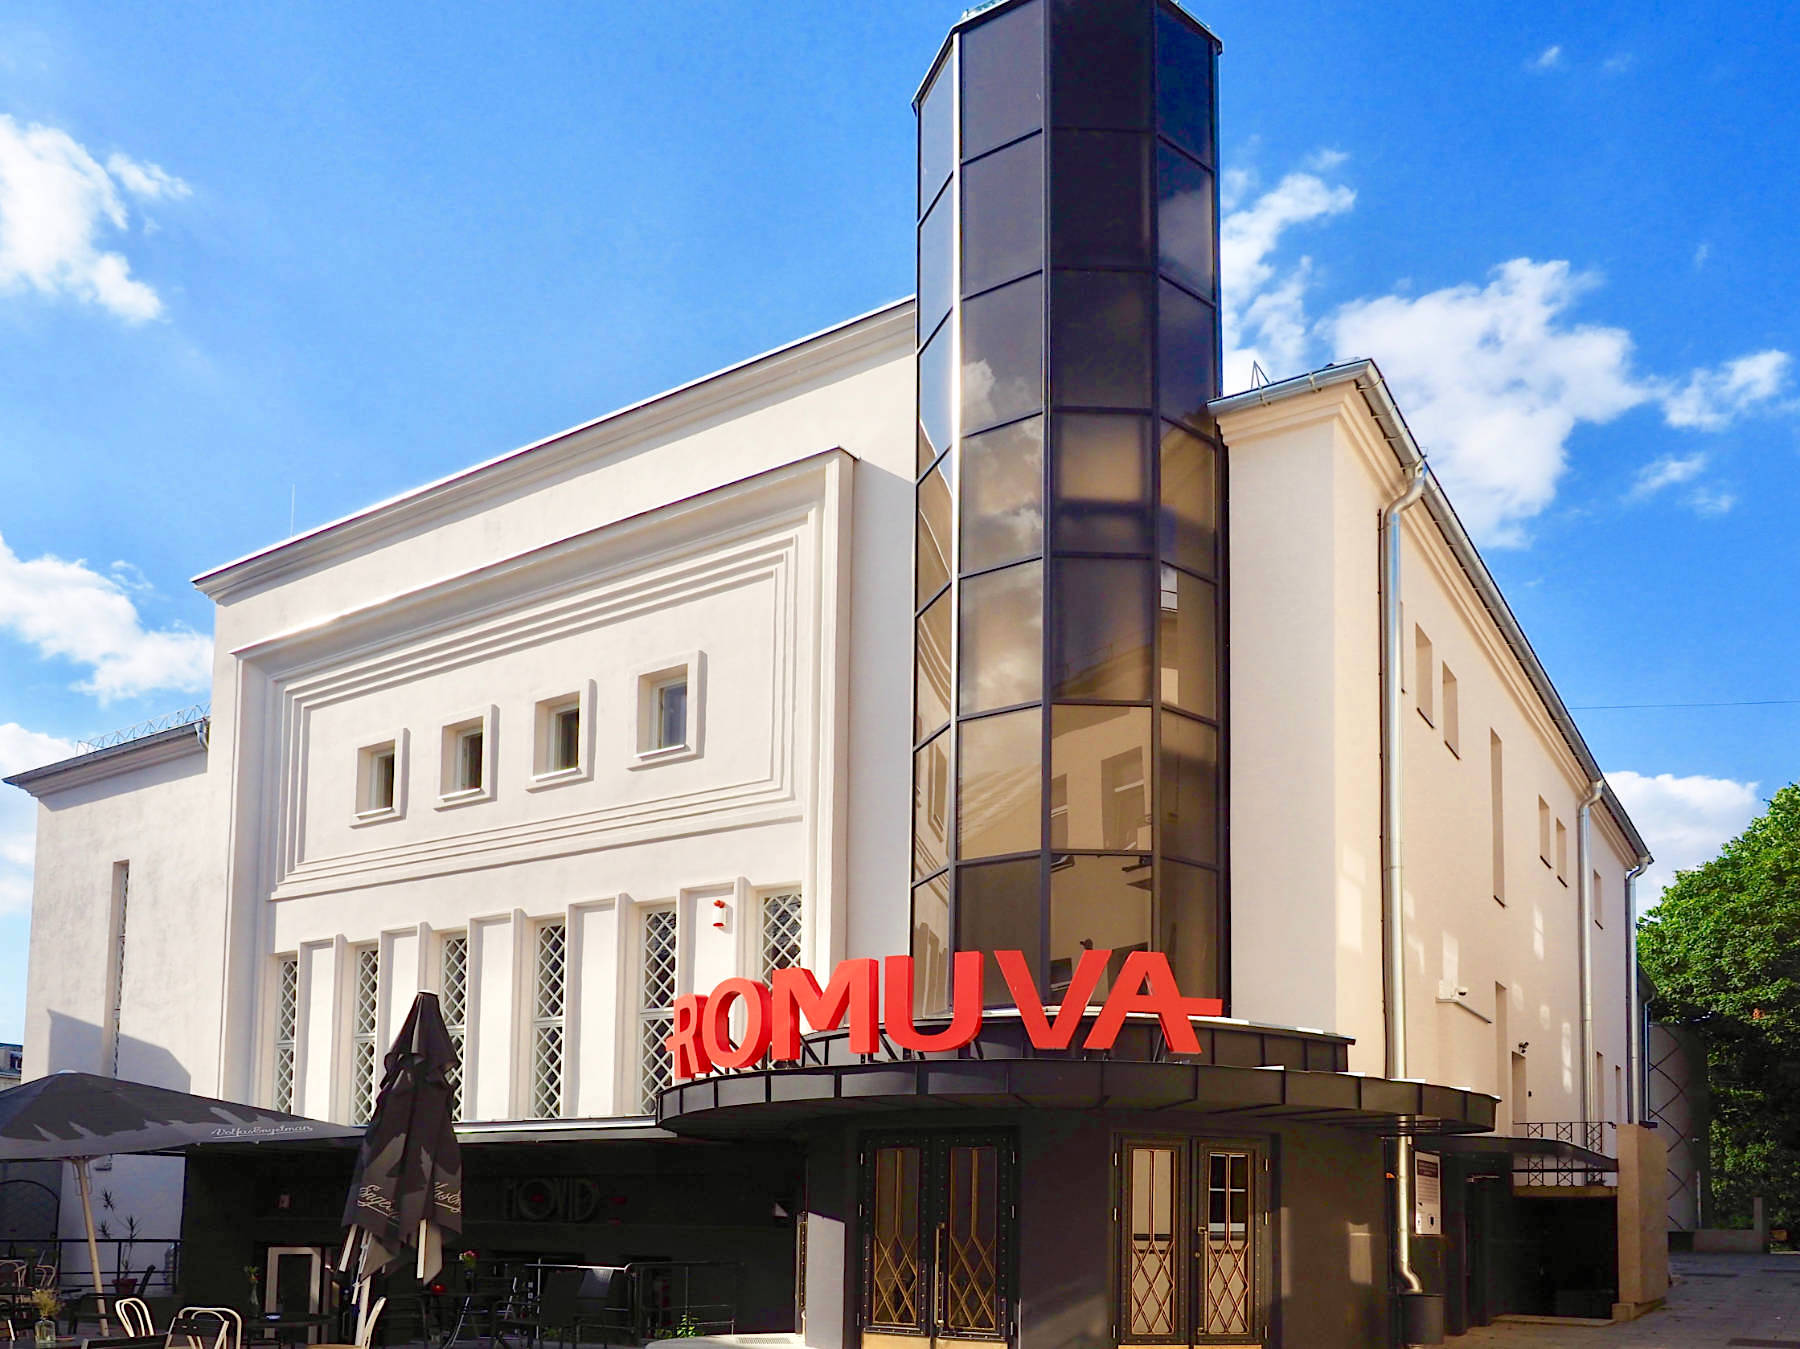 Etwas zurück gesetzt von der Laisvės Aleja lädt das Romuva-Kino draußen wie drinnen zum Verweilen ein. Entworfen von Nikolajus Mačiulskis und 1940 eröffnet, bot es hinter seiner Art-Déco-Fassade die modernste Technik für fast siebenhundert Zuschauer. Aufwendig wieder hergerichtet ist es heute das zentrale Arthouse-Filmtheater in Kaunas.